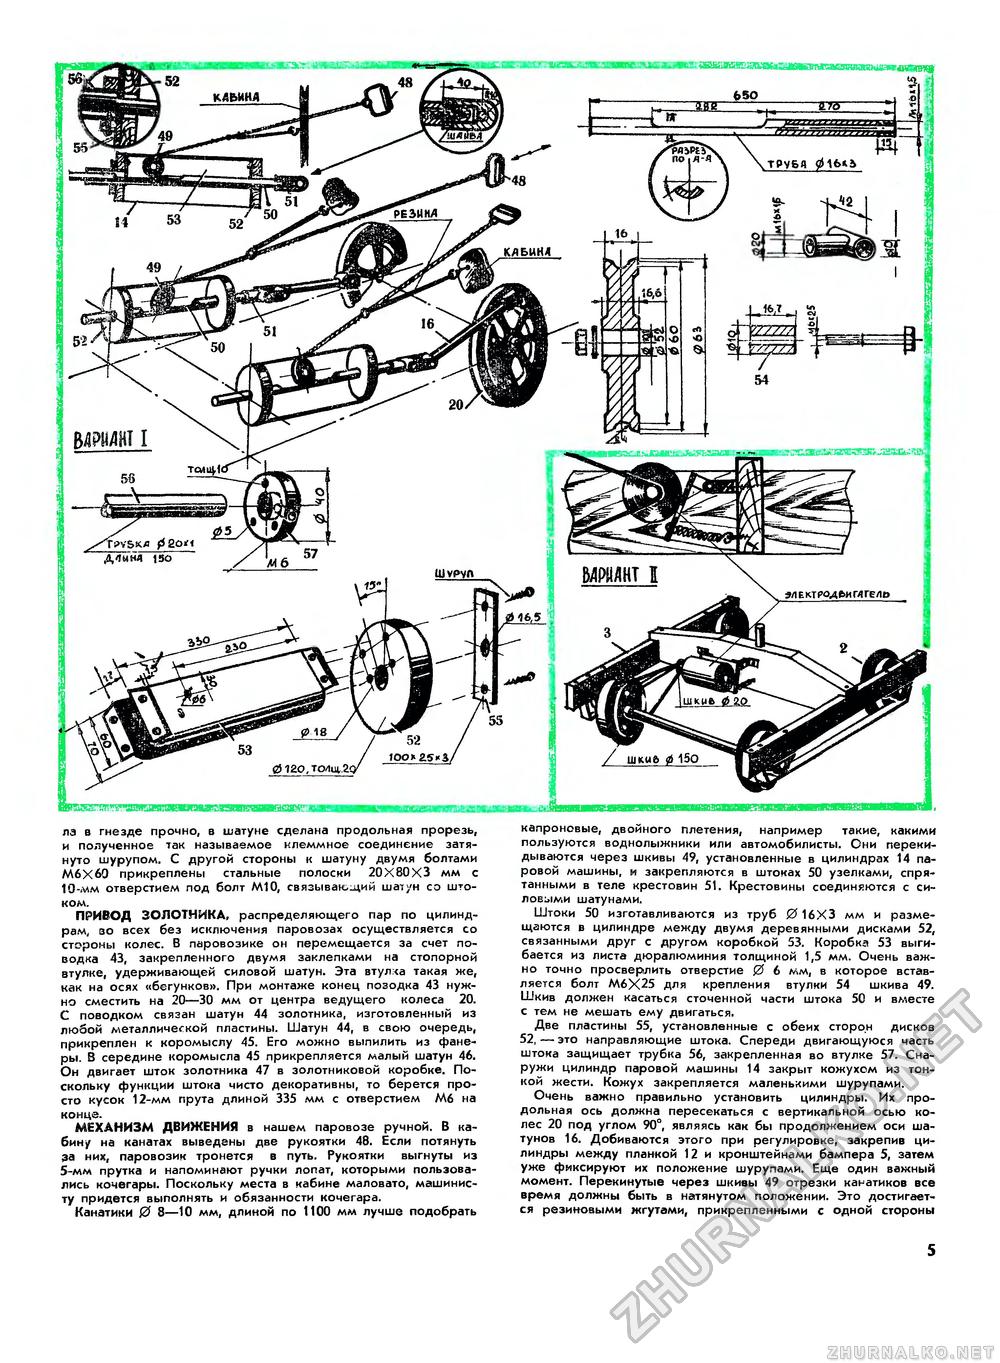 Юный техник - для умелых рук 1975-07, страница 5